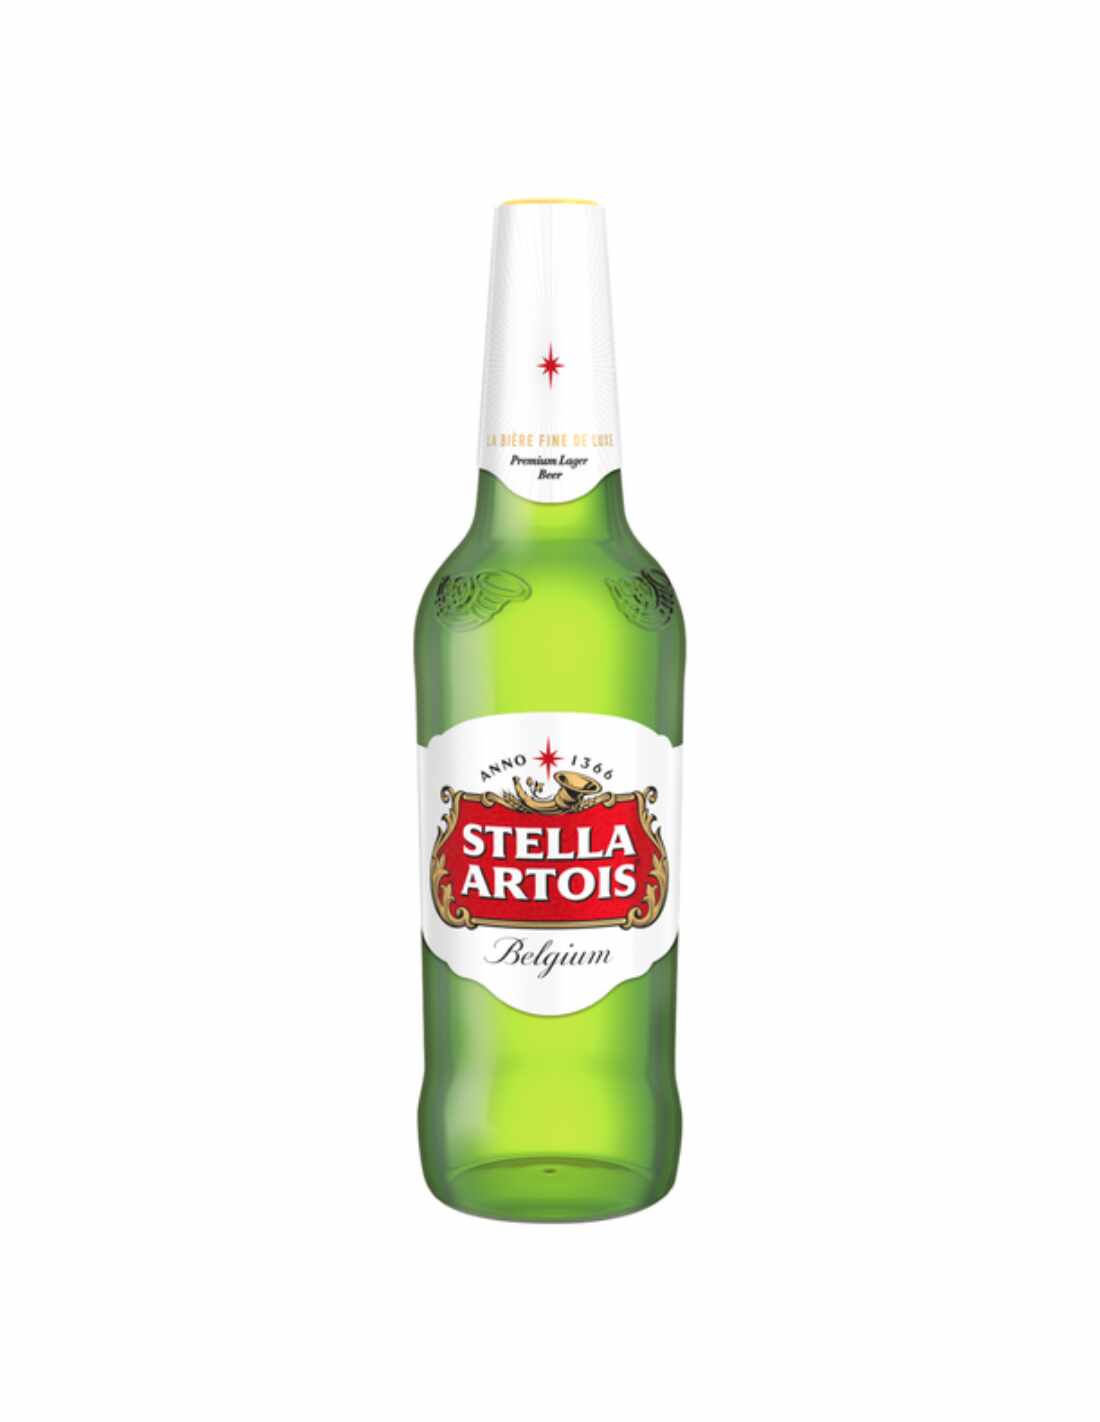 Bere blonda Stella Artois, 5% alc., 0.66L, Romania